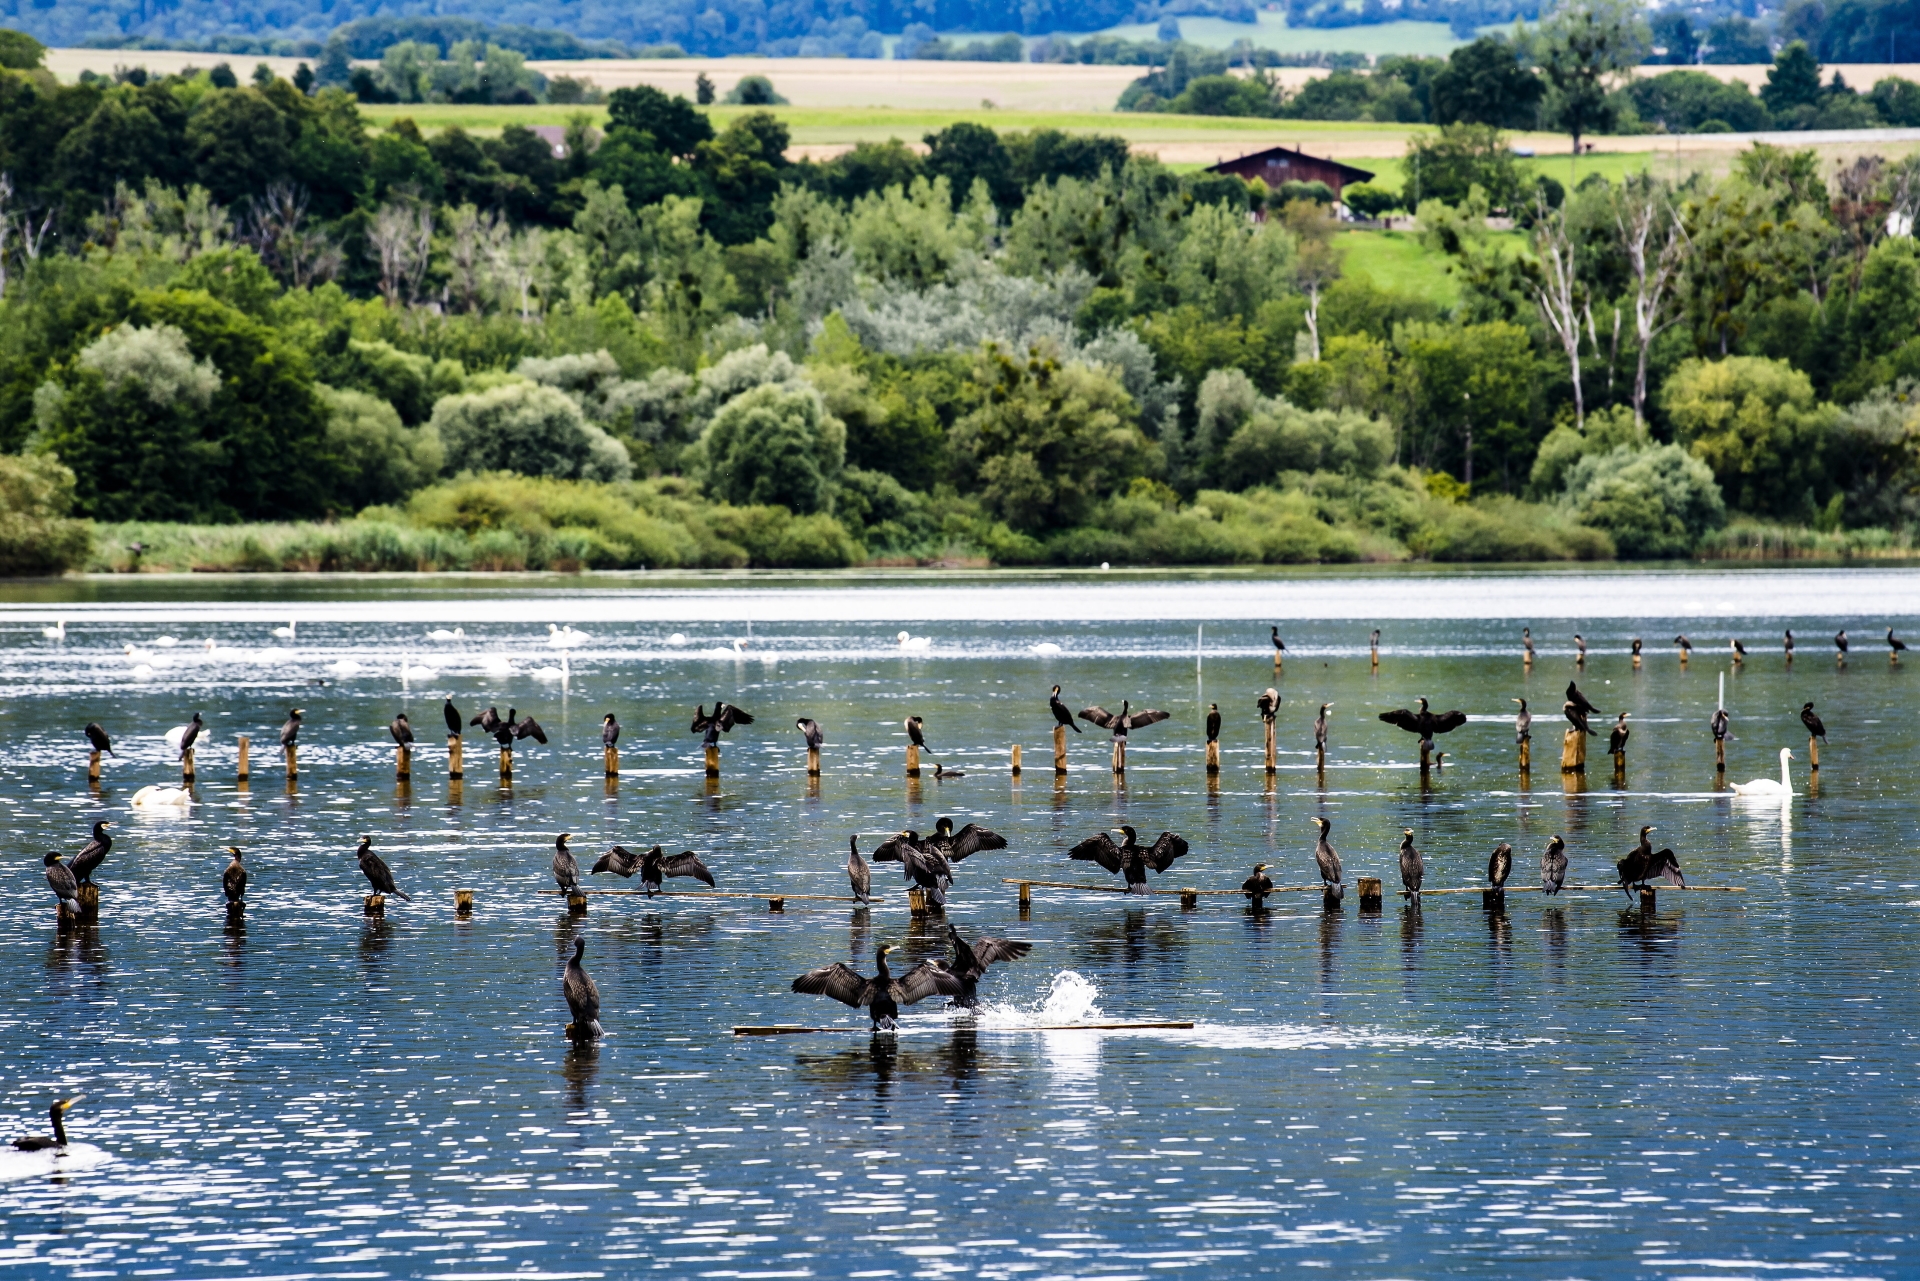 Une vue sur des cormorans dans la zone naturelle protegee dite du "Bois des Vernes" du lac de Neuchatel le lundi 2 aout 2021 a Yverdon. (KEYSTONE/Jean-Christophe Bott)